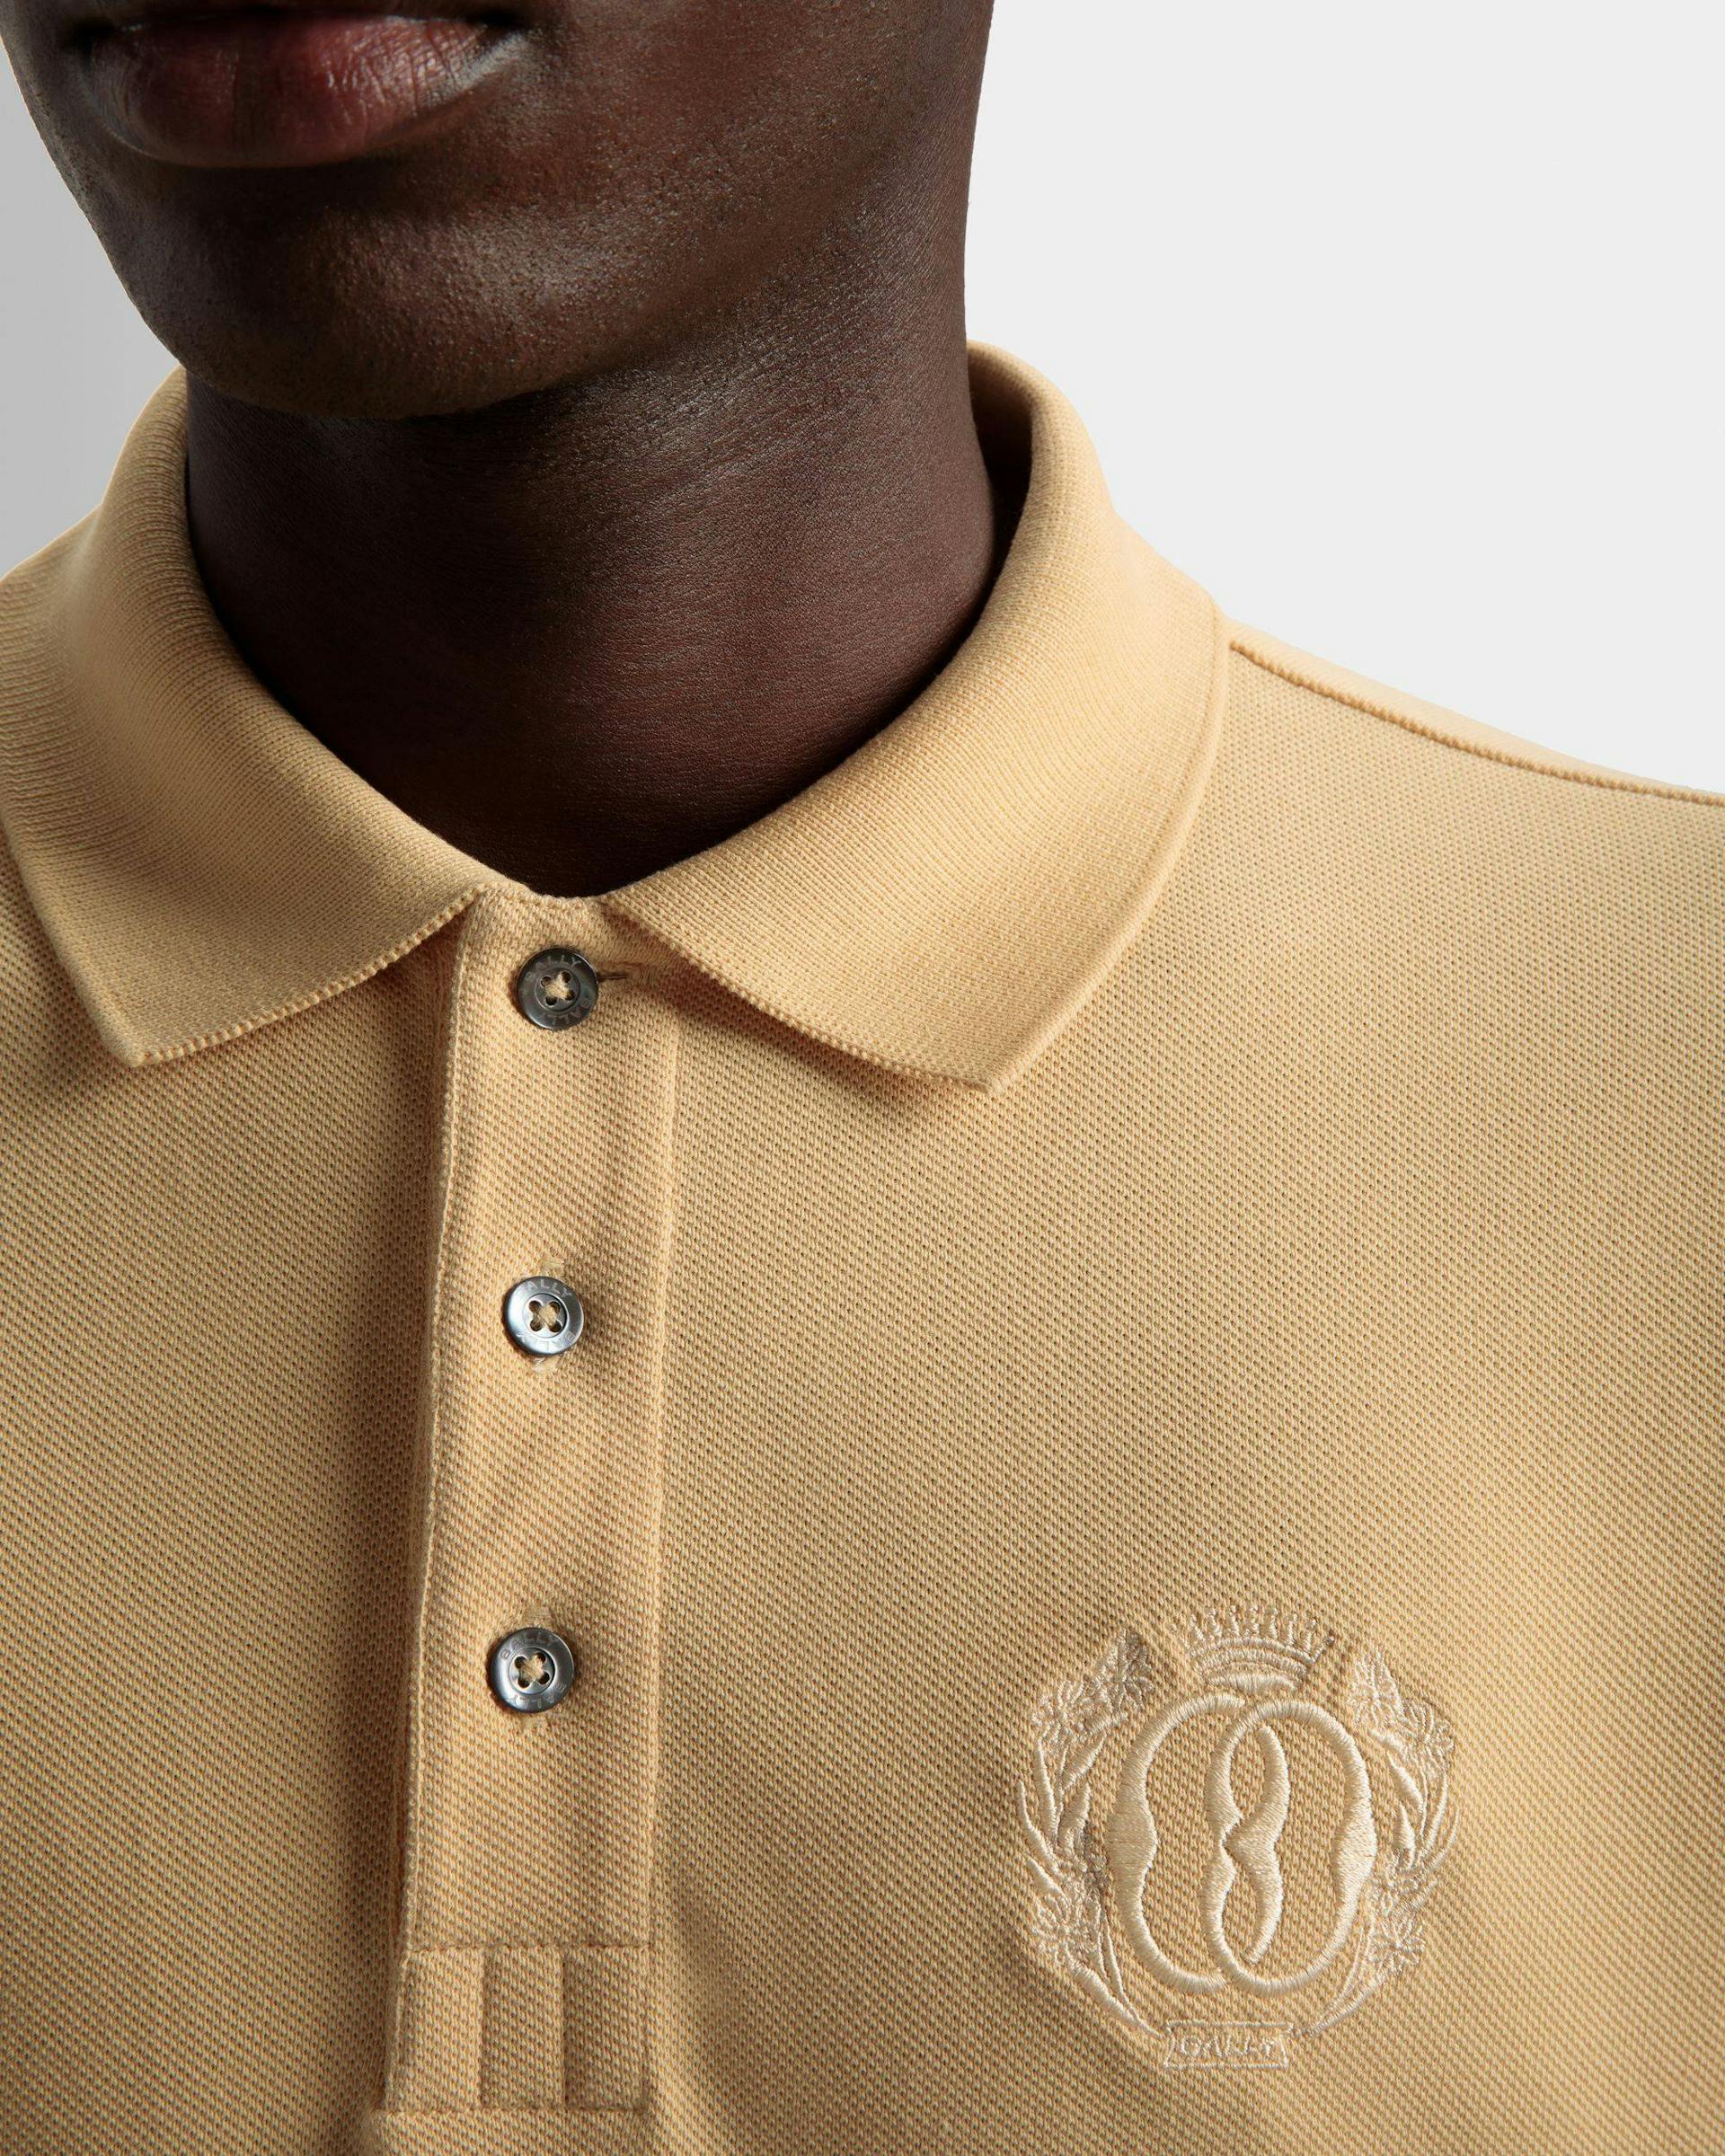 Emblem Polo In Cream Cotton - Men's - Bally - 04